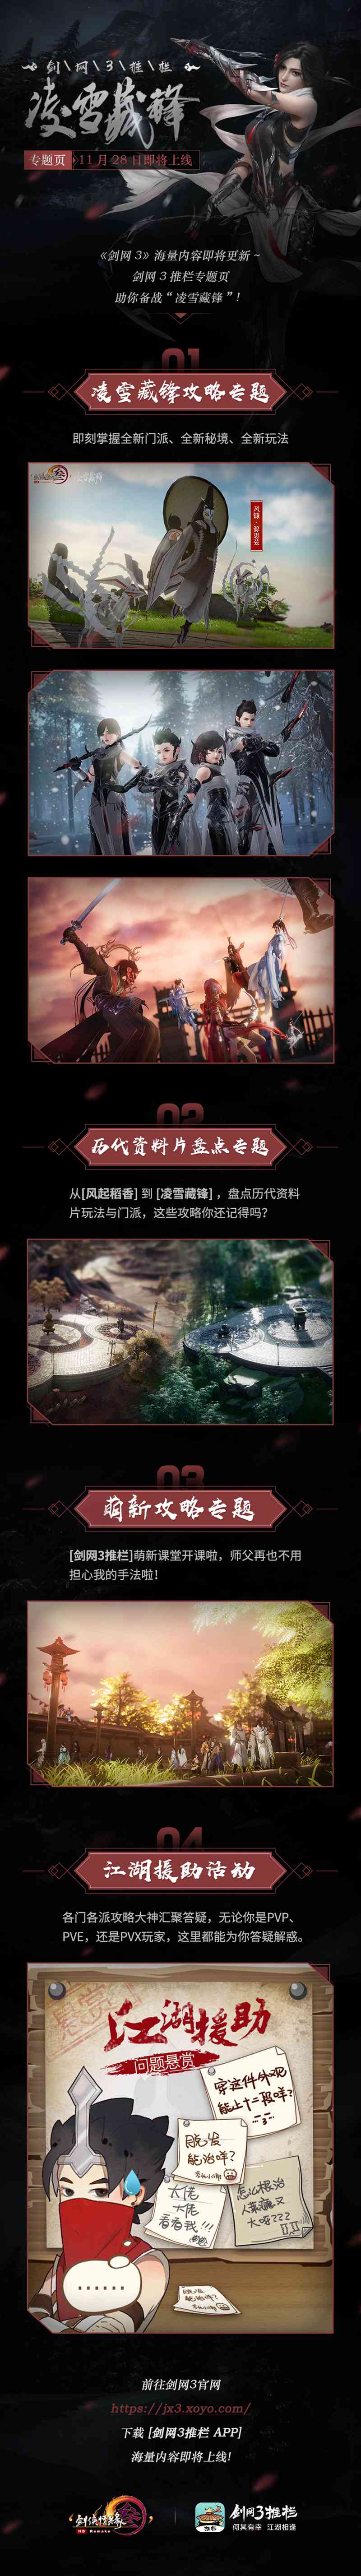 《剑网3》凌雪藏锋明日公测 新门派轻功大片上映